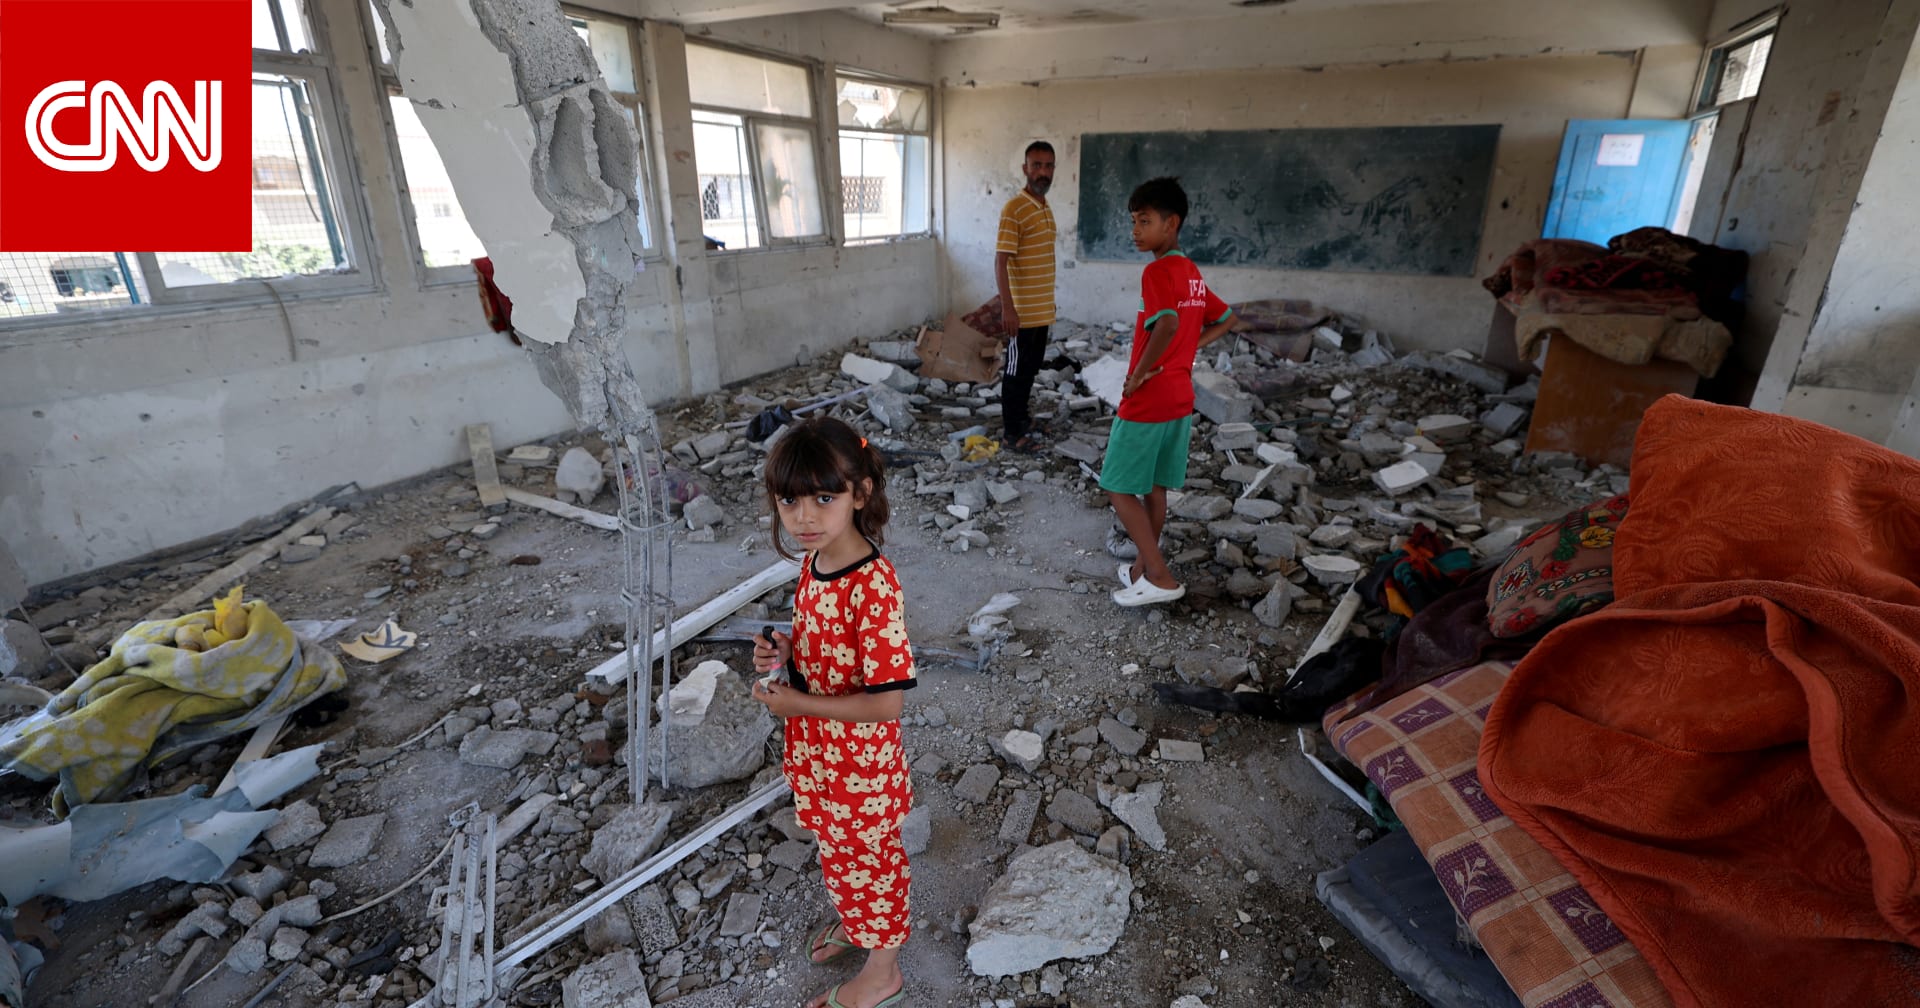 الأمم المتحدة تعلن إدراج إسرائيل على "القائمة السوداء" لانتهاكها حقوق الأطفال خلال النزاعات